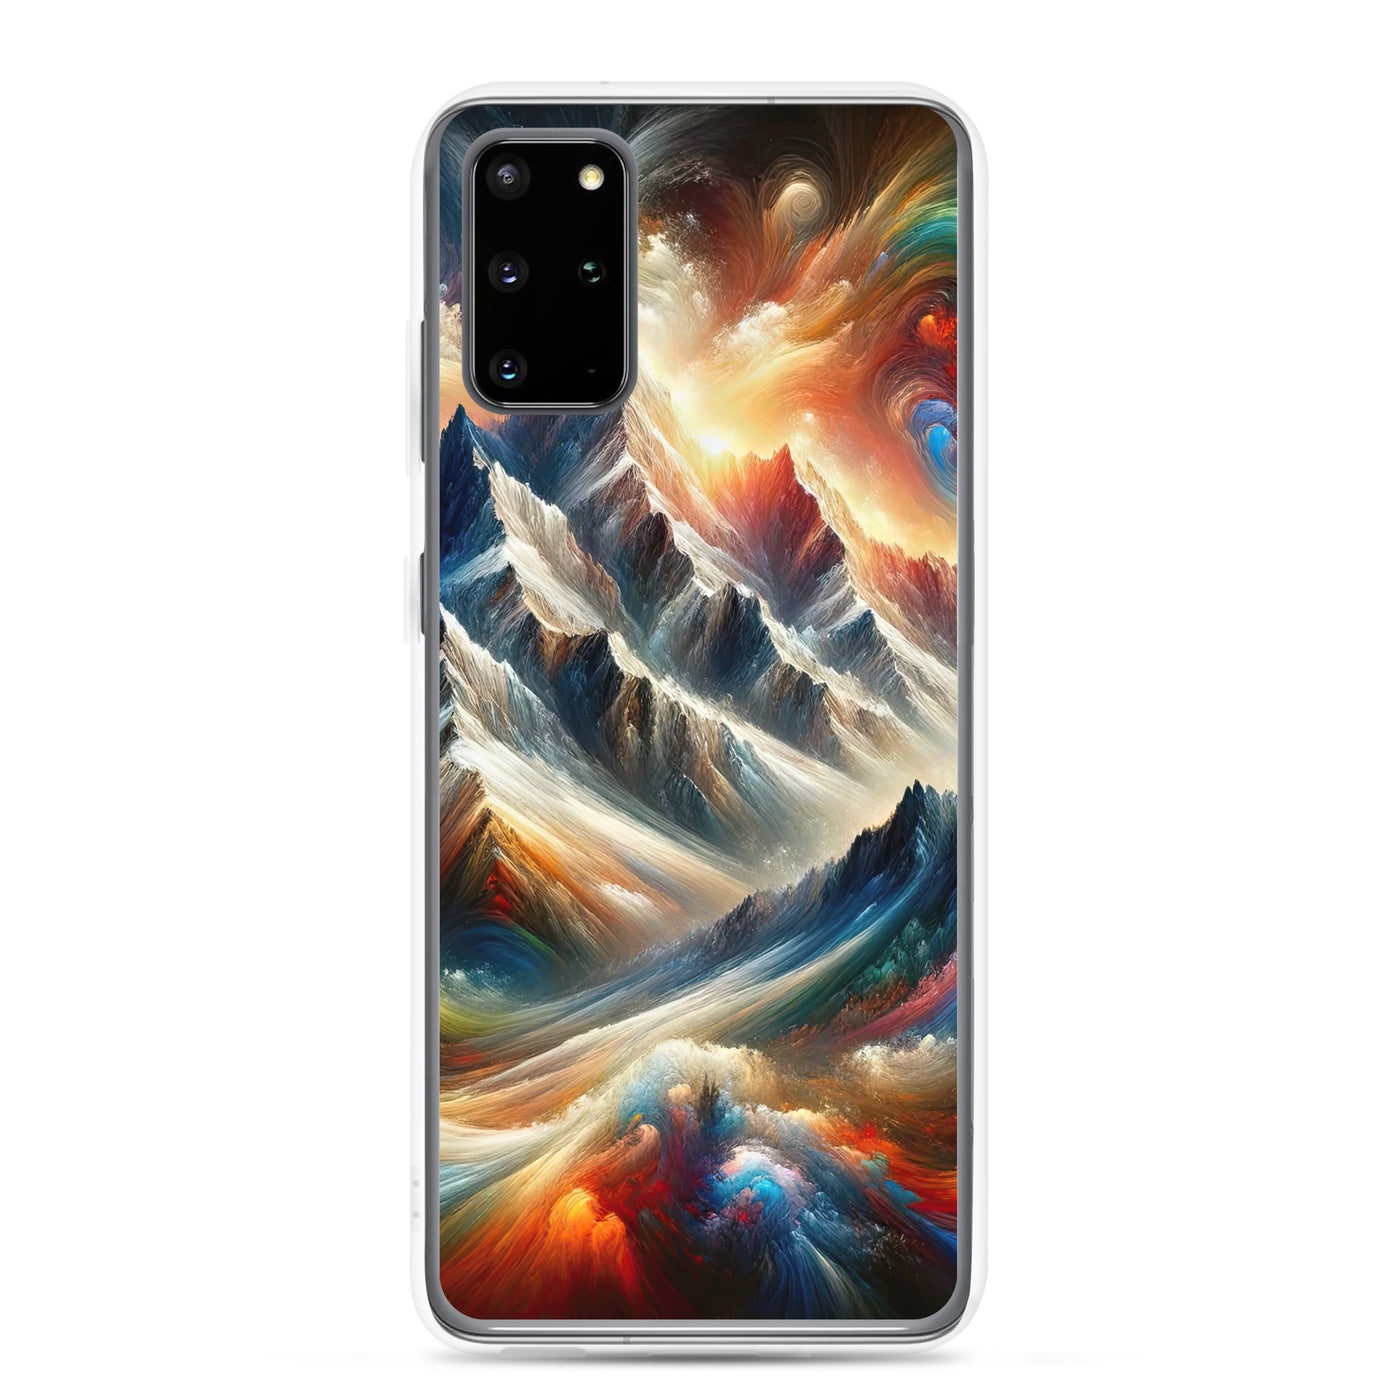 Expressionistische Alpen, Berge: Gemälde mit Farbexplosion - Samsung Schutzhülle (durchsichtig) berge xxx yyy zzz Samsung Galaxy S20 Plus